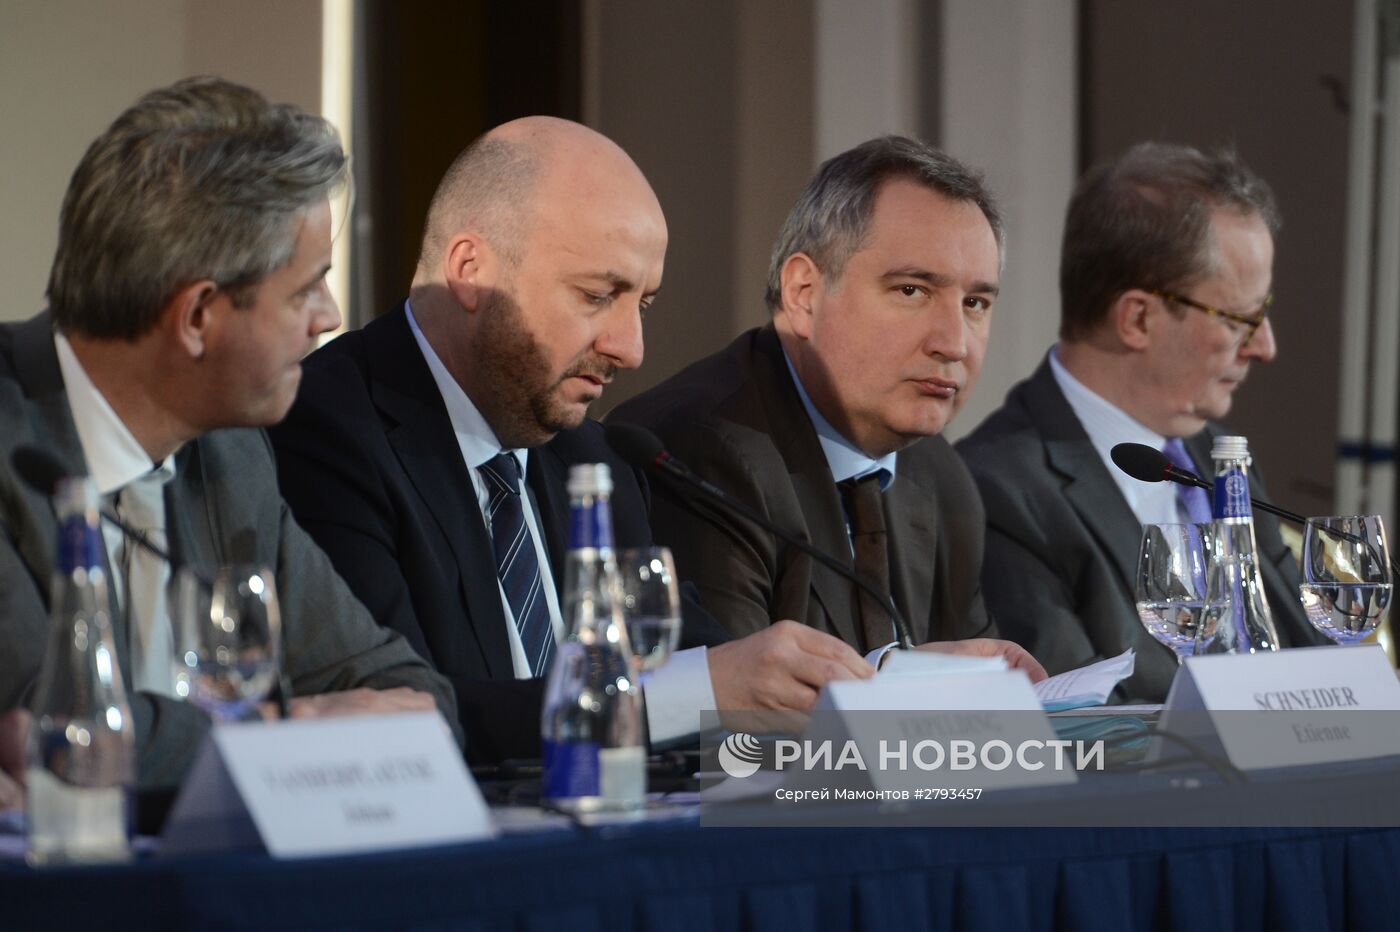 Заседание комиссии по экономическому сотрудничеству России и Бельгийско-Люксембургского экономического союза